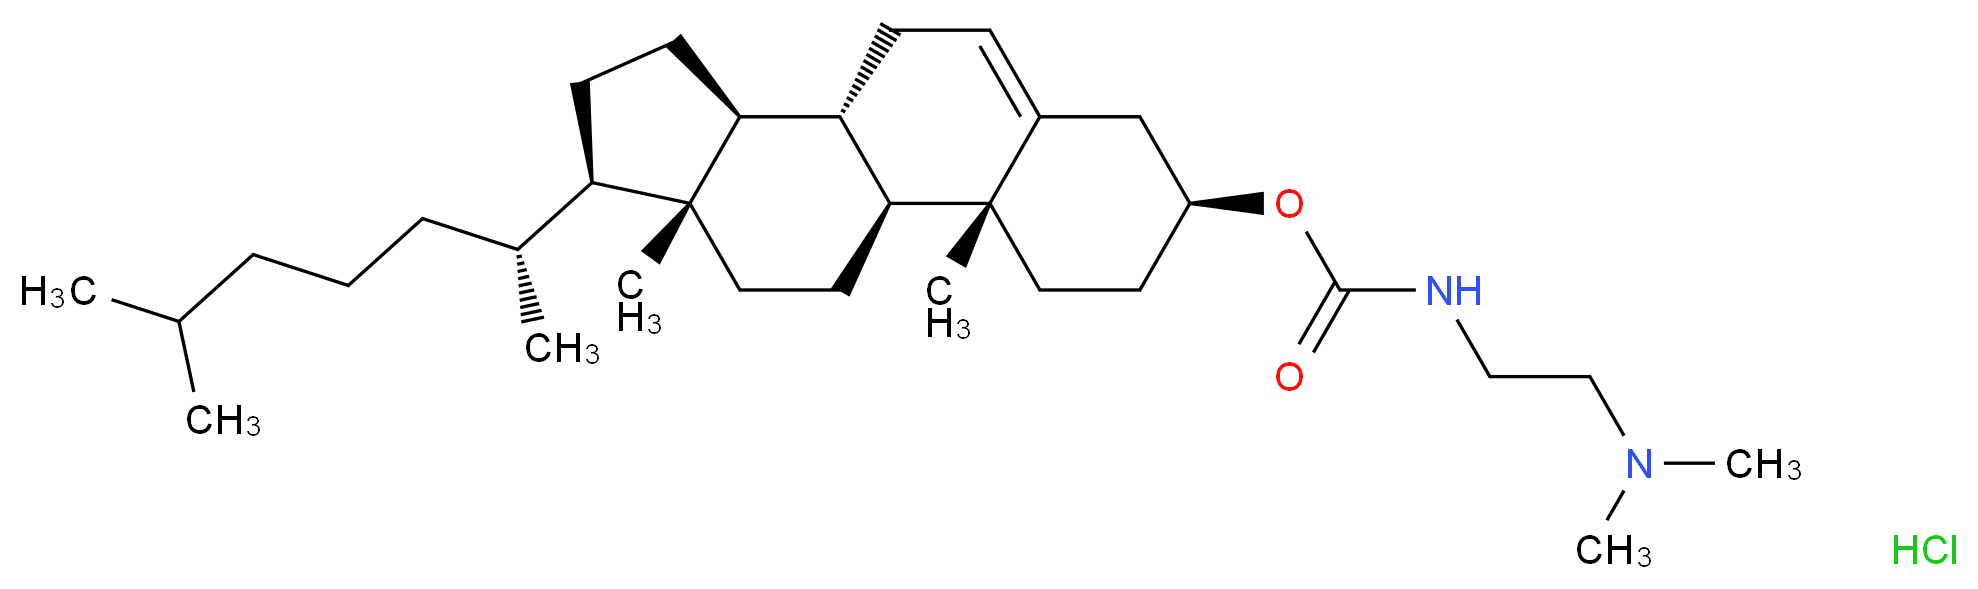 Cholesteryl 3β-N-(di-methyl-amino-ethyl)-carbamate hydrochloride_Molecular_structure_CAS_166023-21-8)